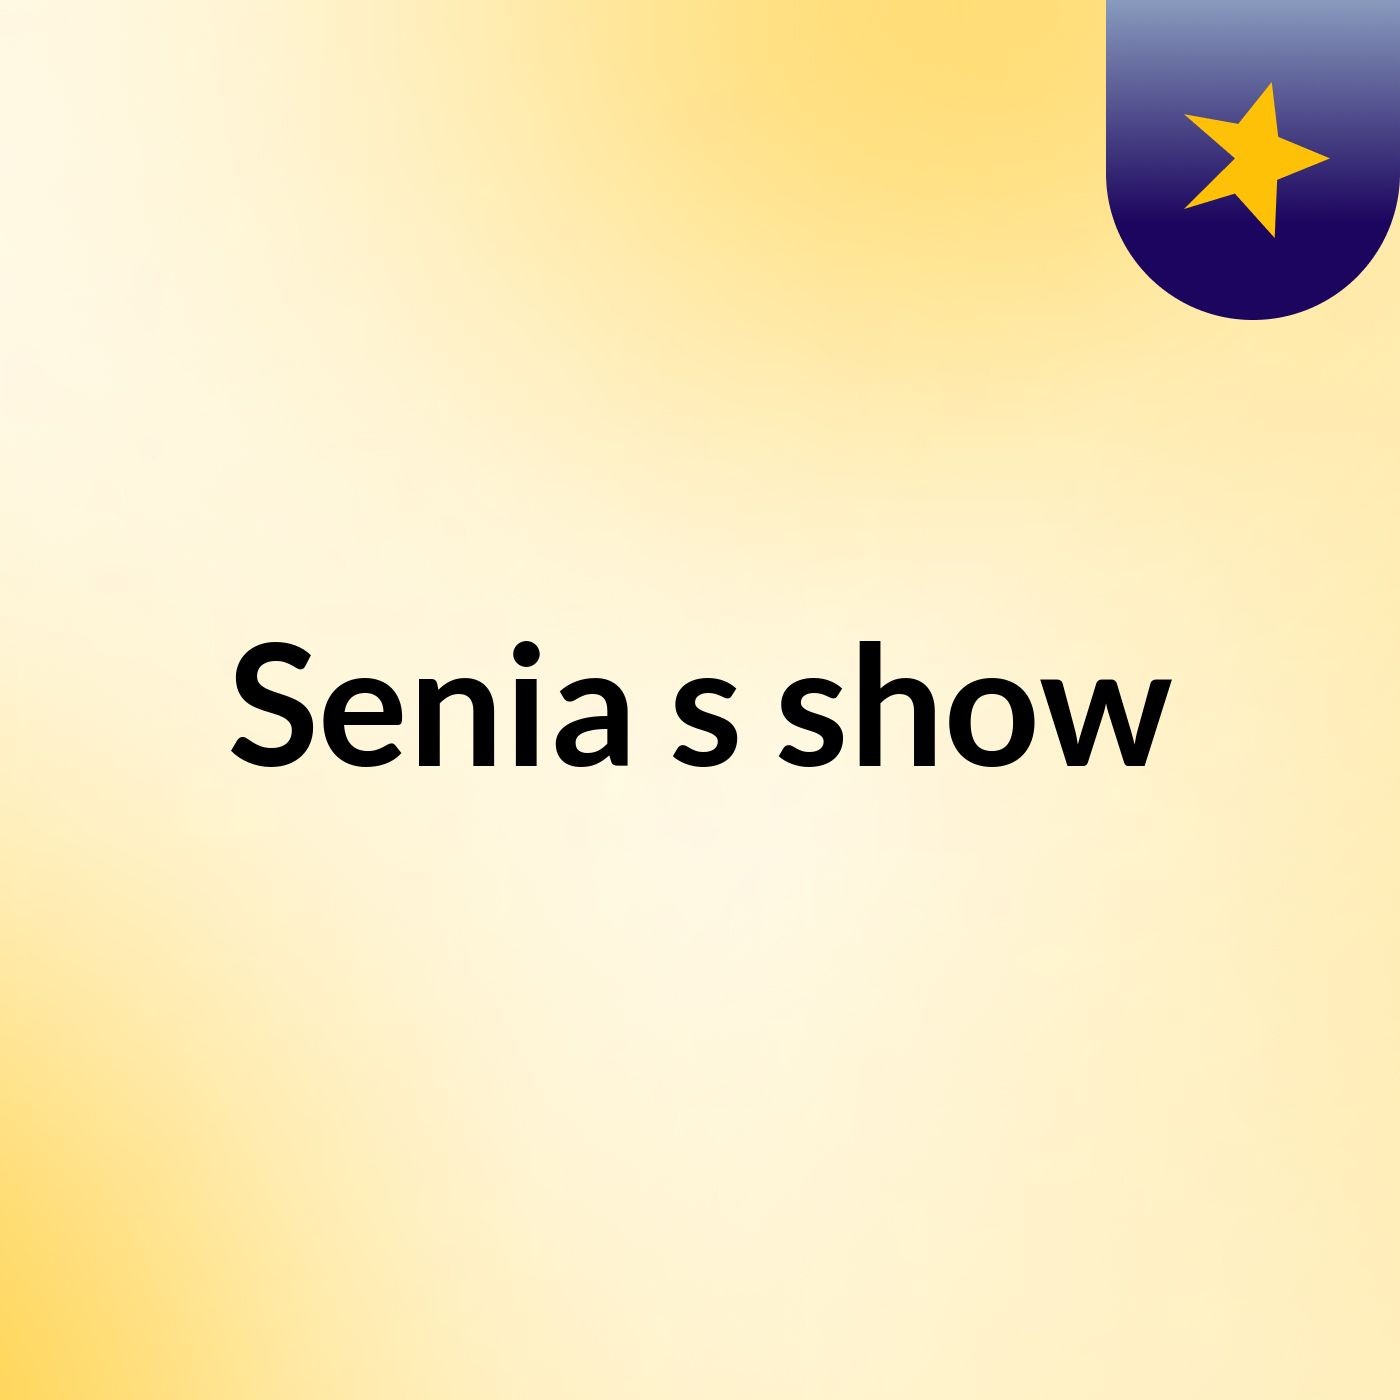 Senia's show